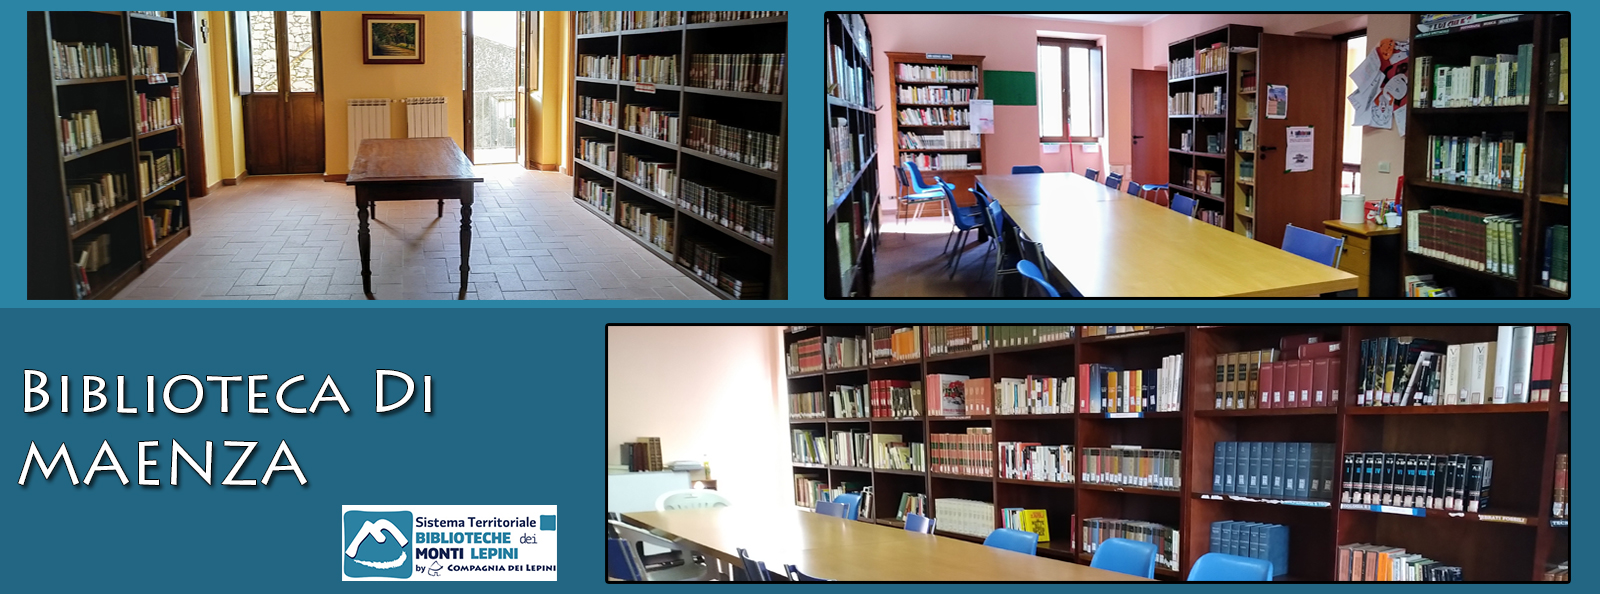 Maenza - Biblioteca Comunale